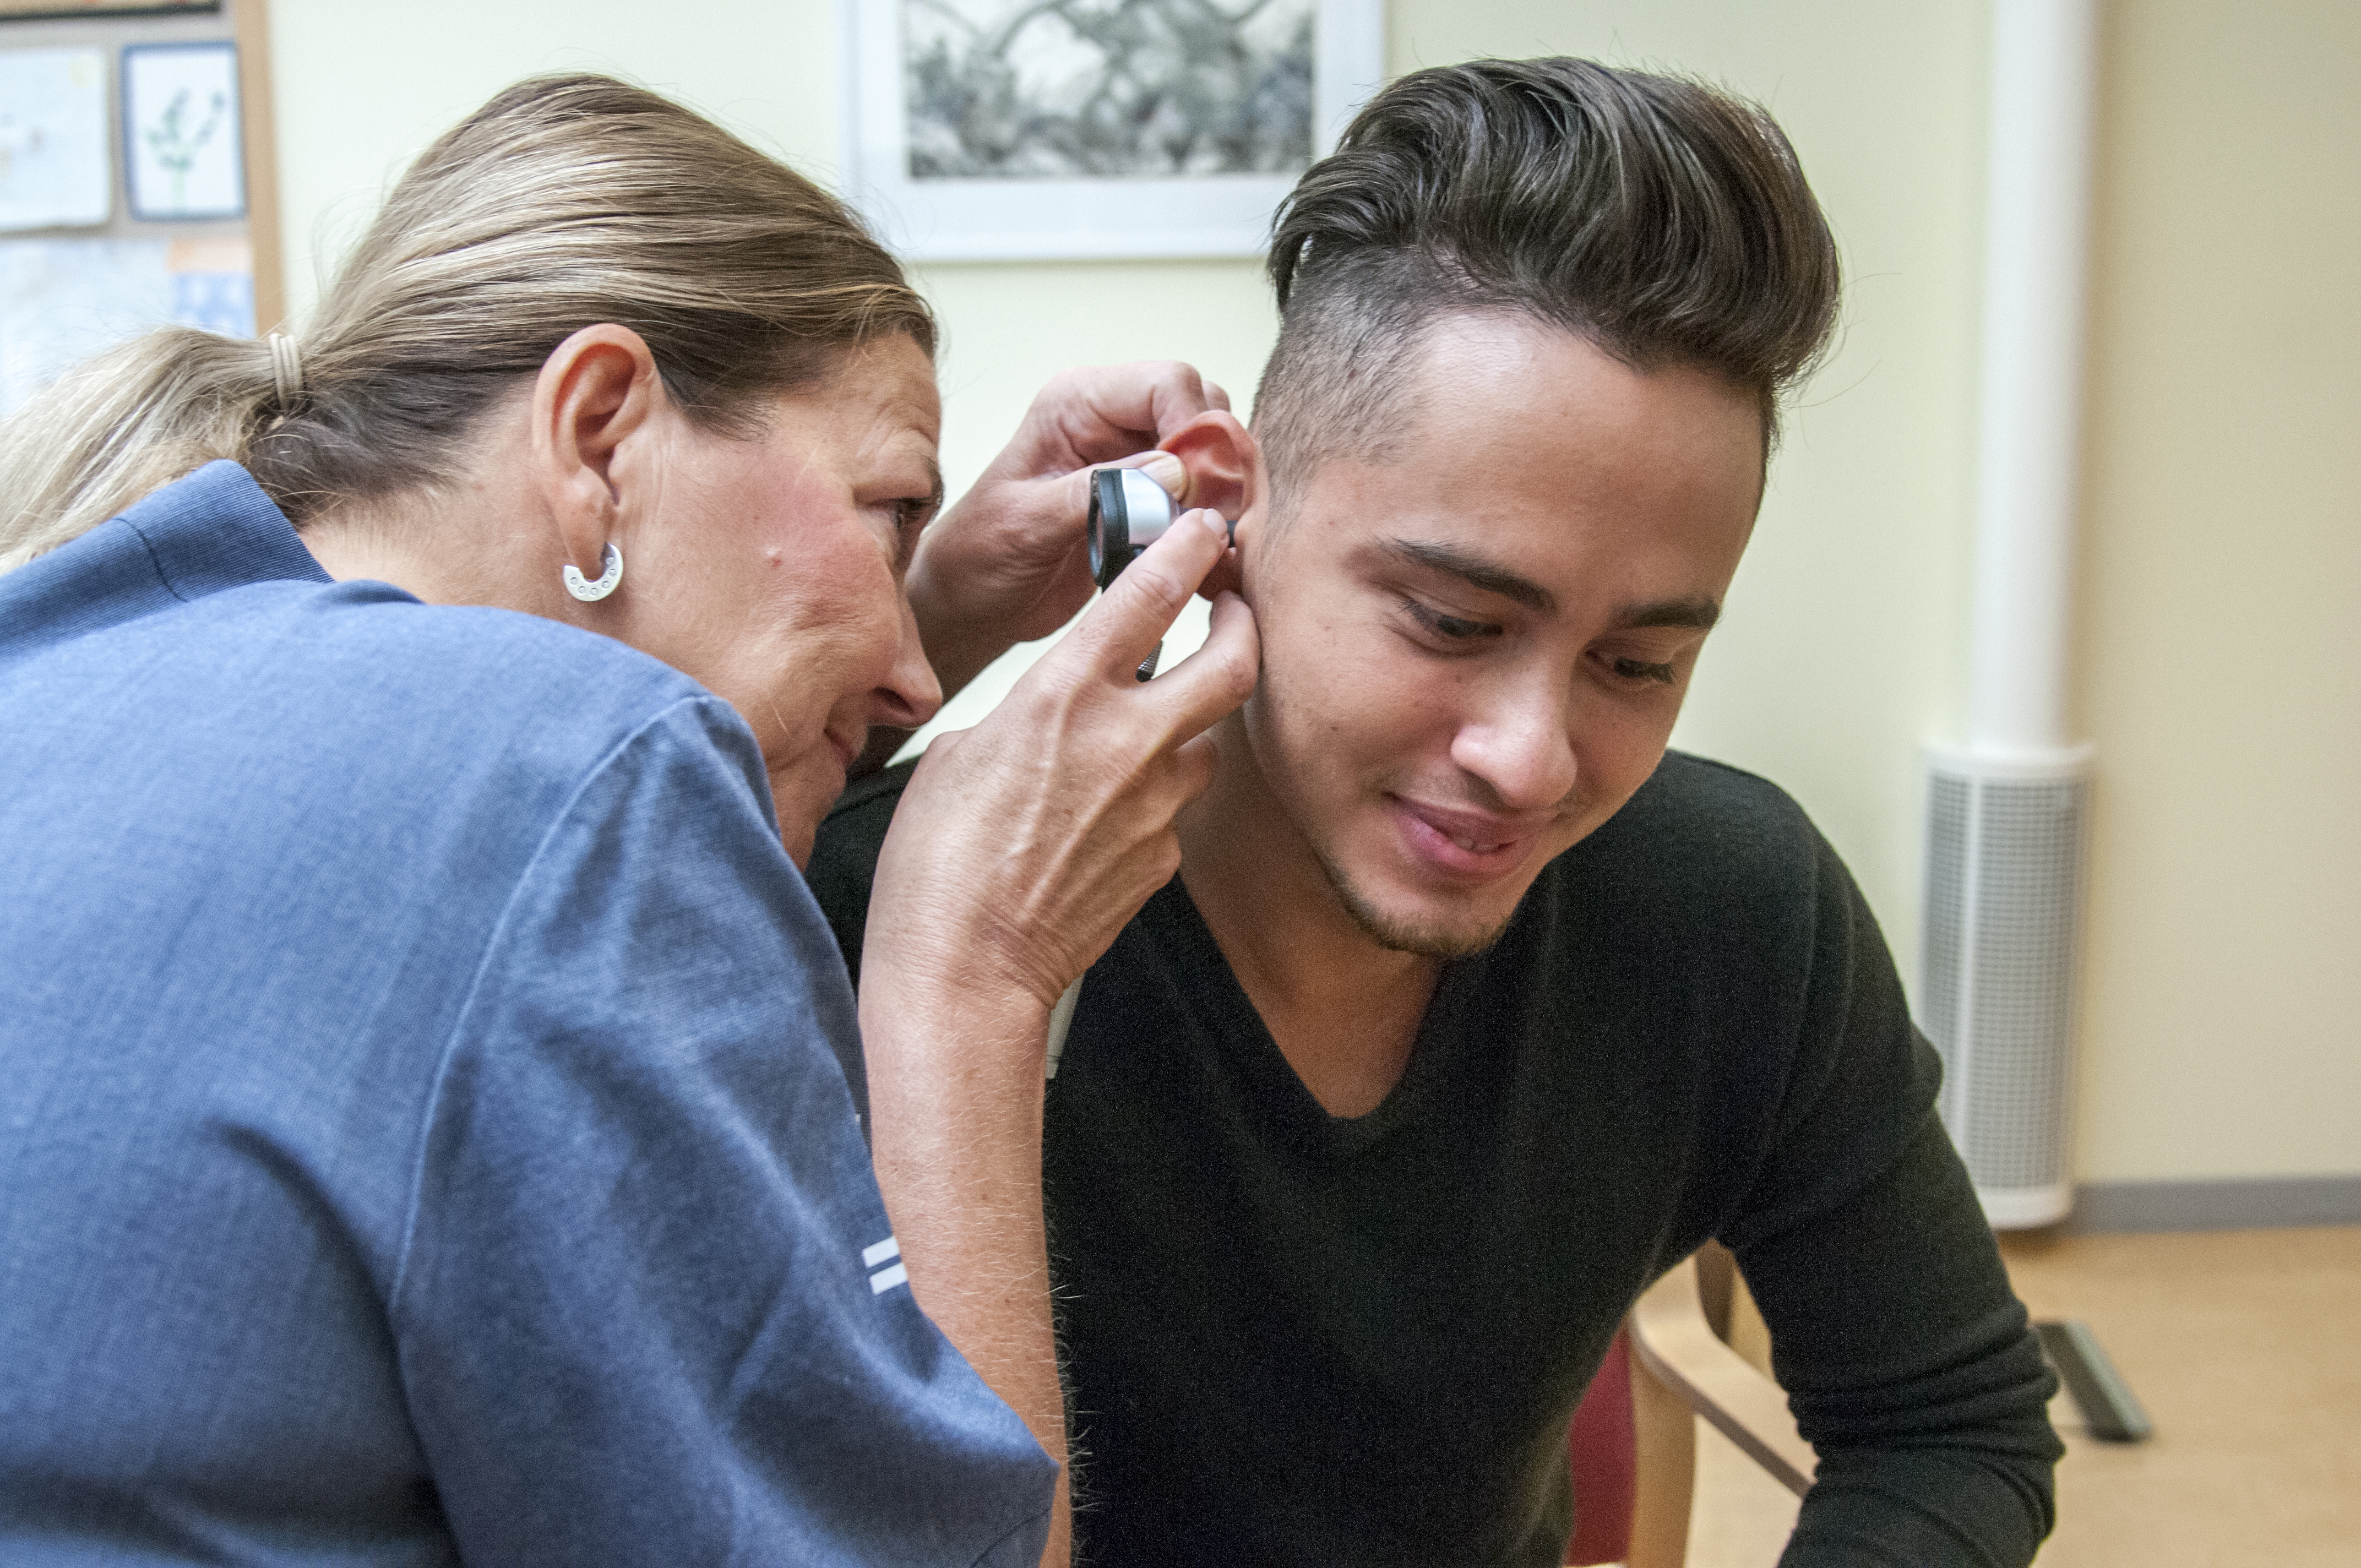 Undersökning av örat med otoskop. Fotografi.